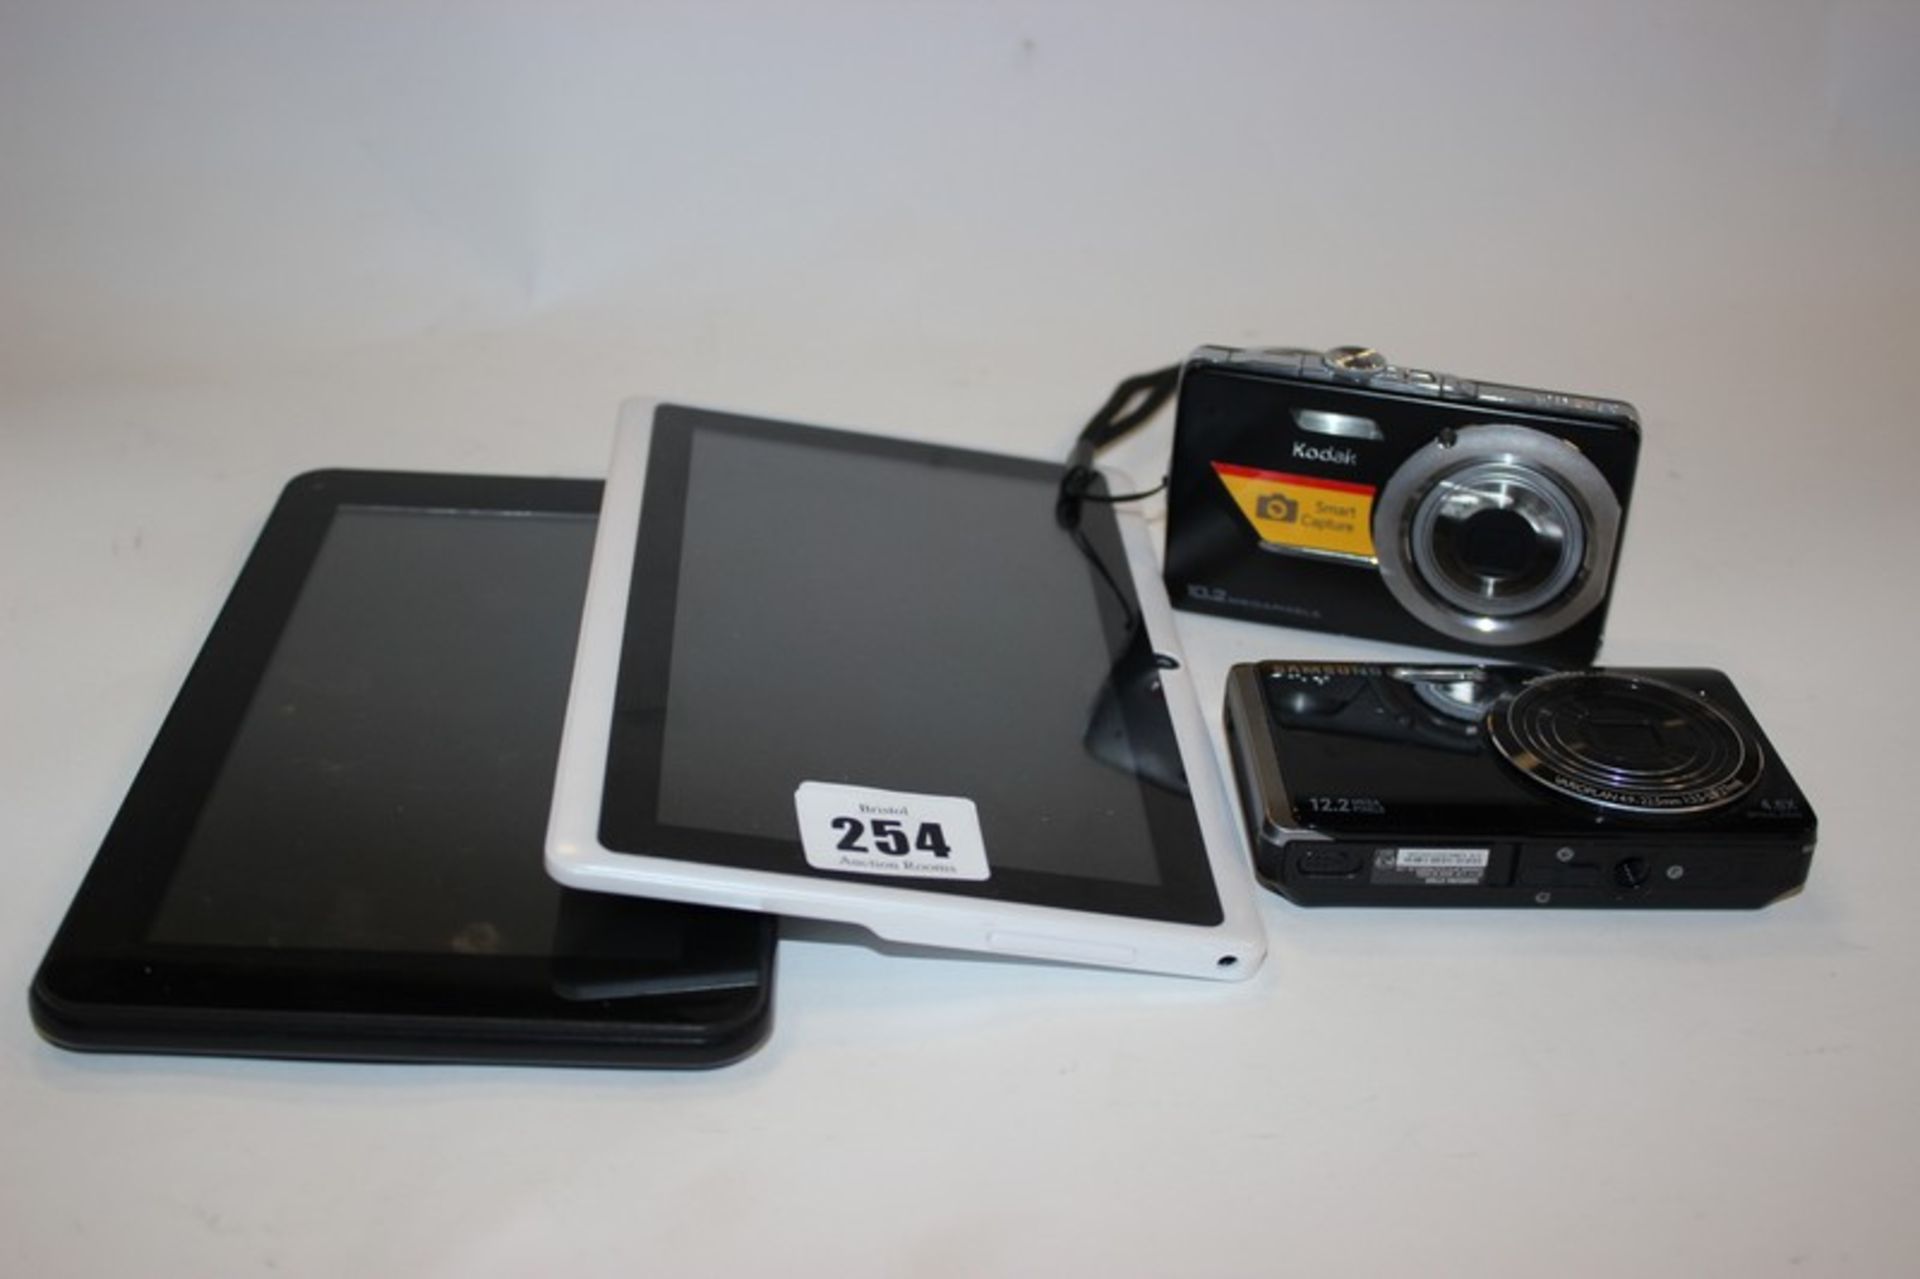 A Cyclone Explorer tablet, Quad Core 8GB model: A7N15Q tablet, a Samsung ST500 camera and a Kodak